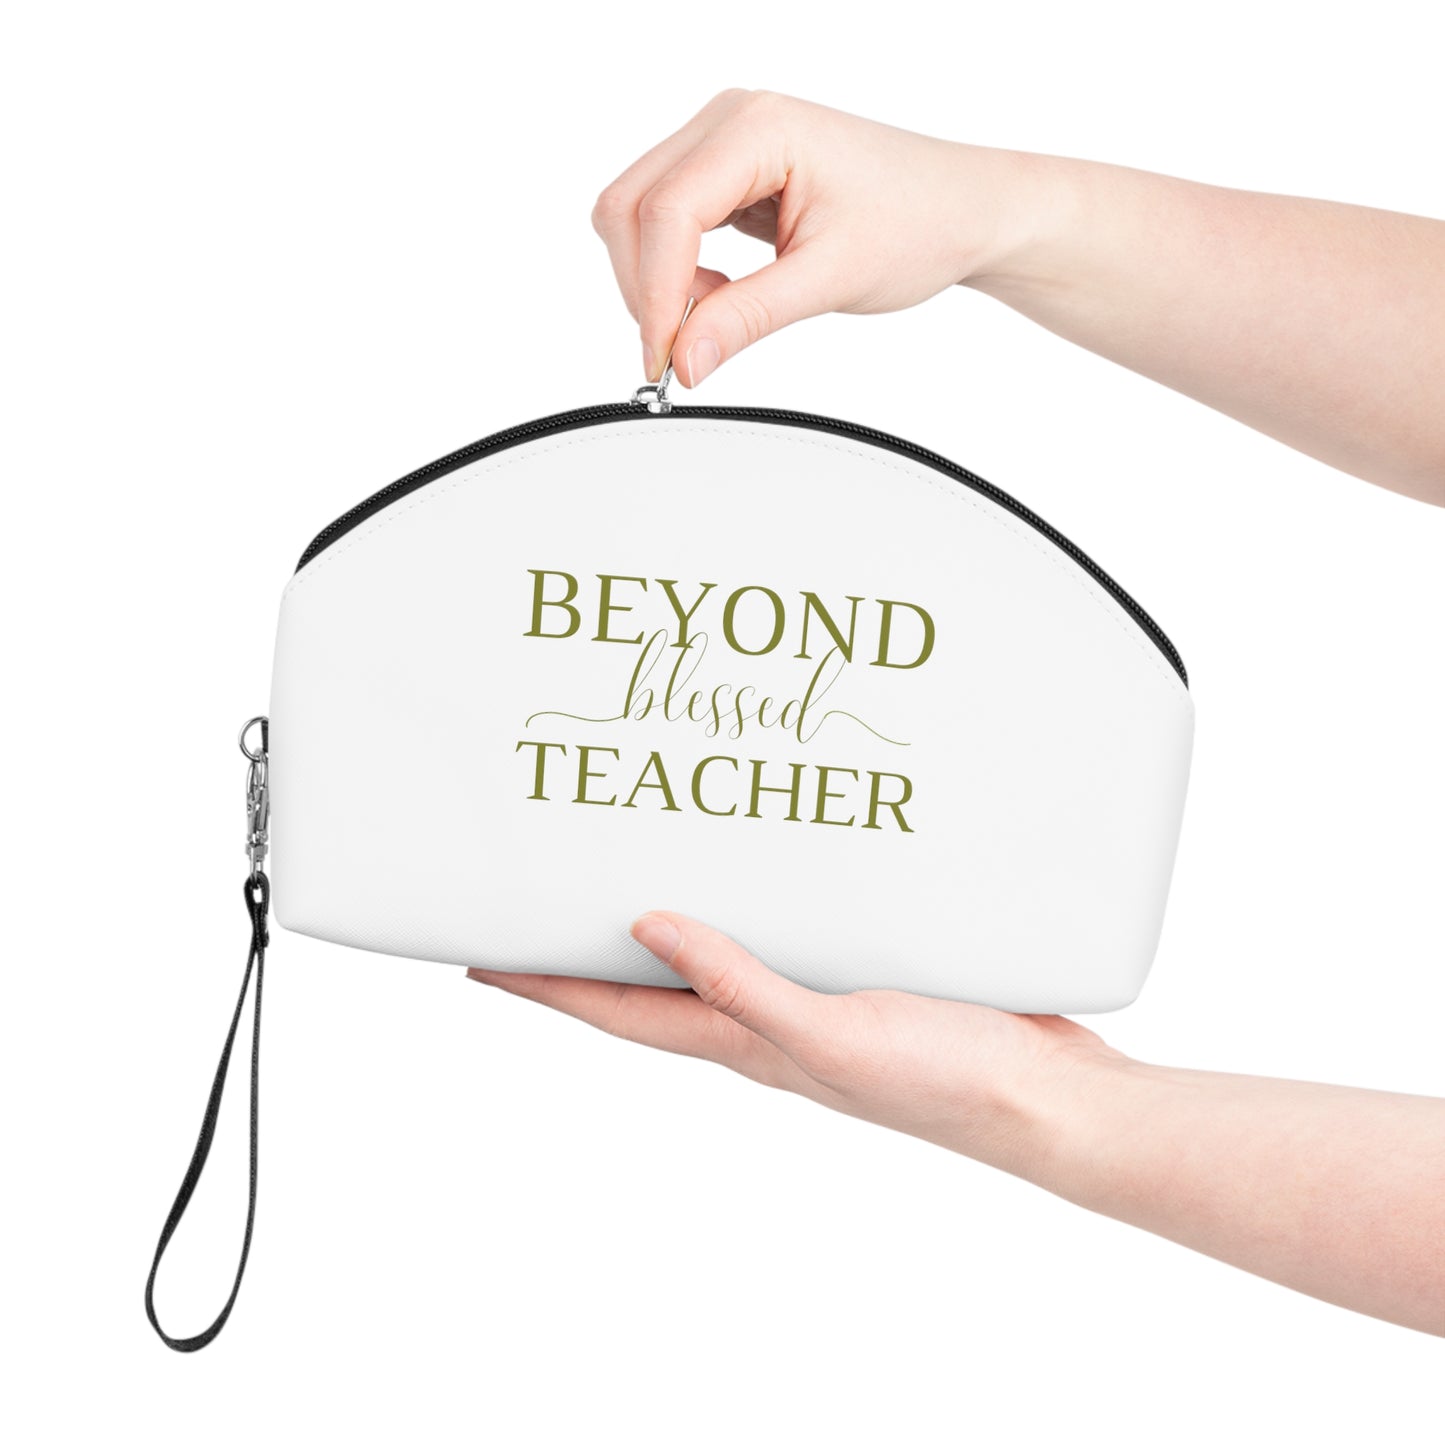 Beyond Blessed Teacher - Makeup Bag - Olive Green